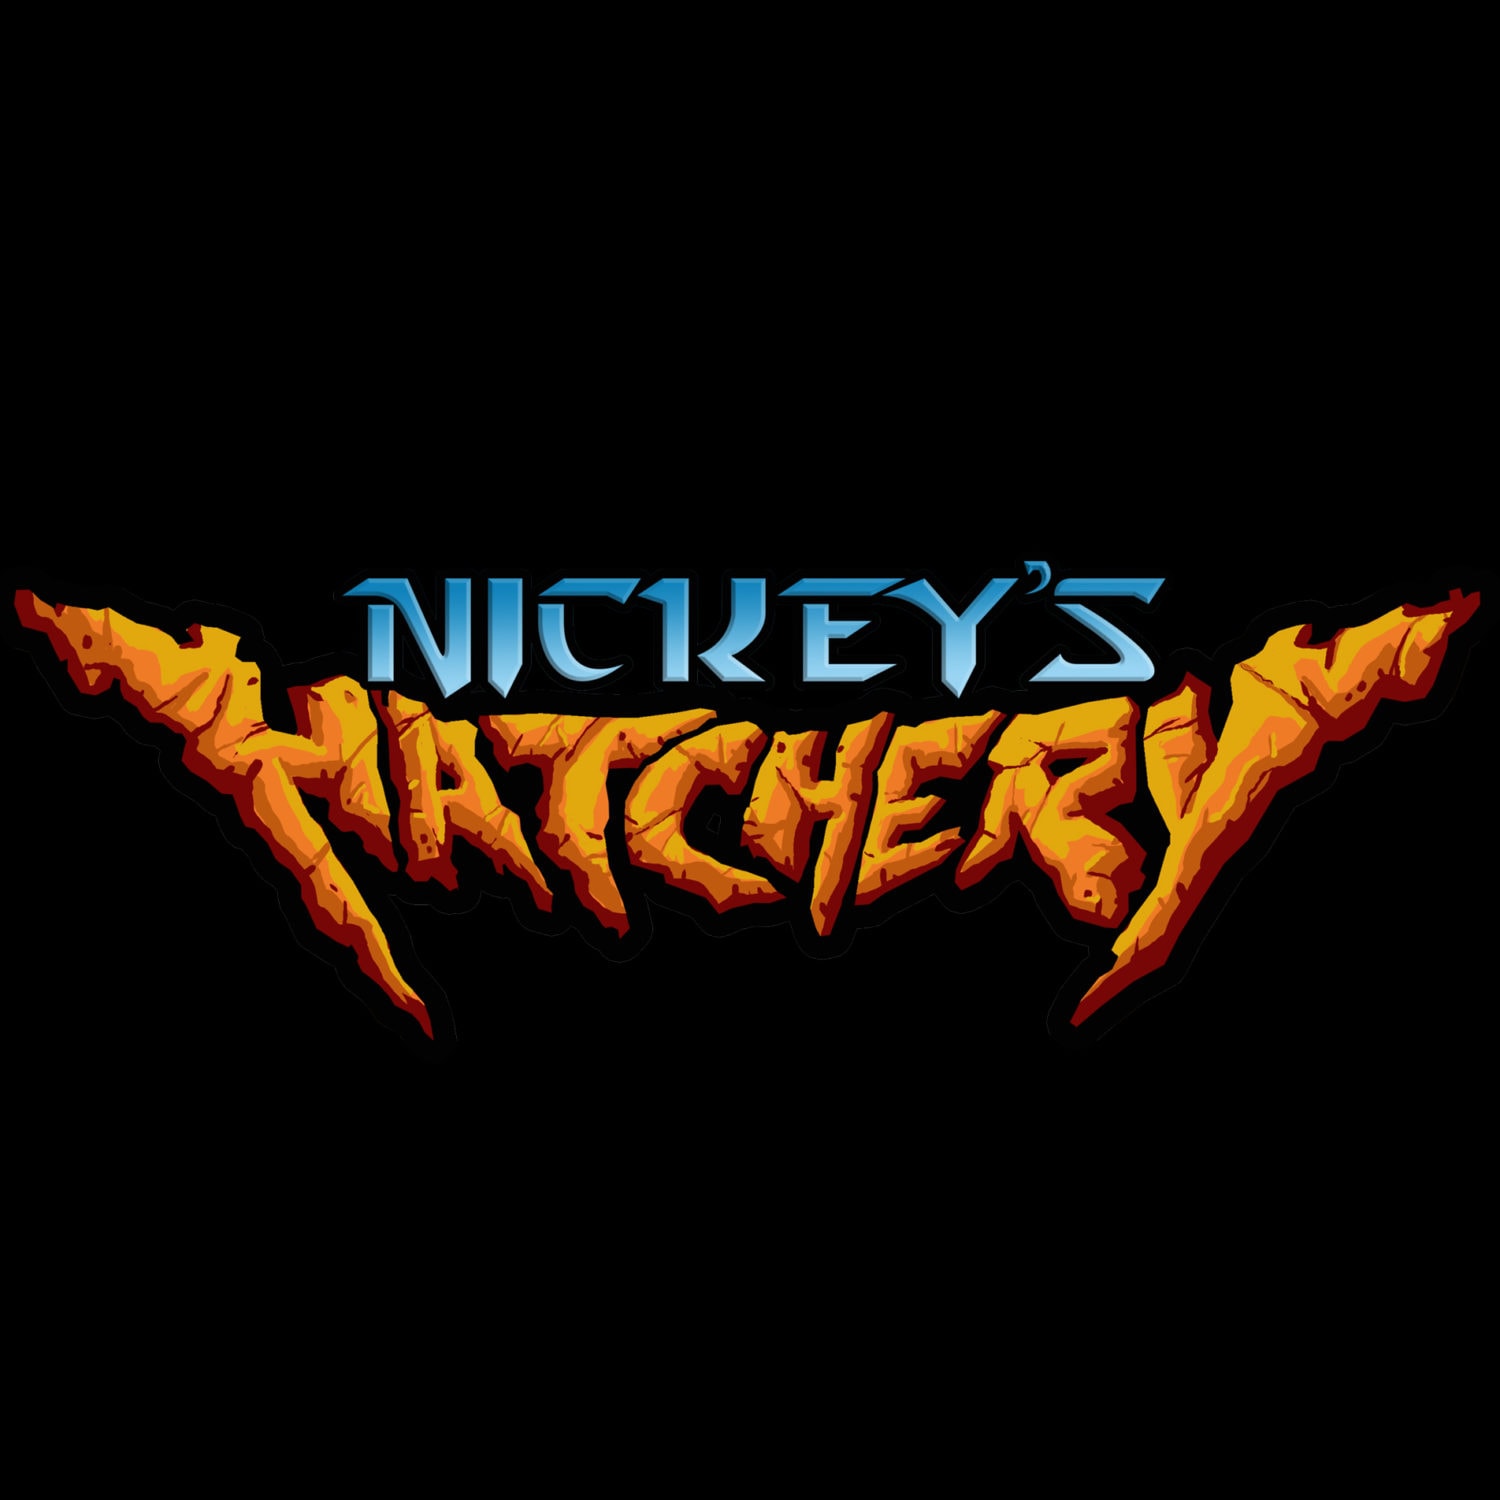 Nickey's Hatchery